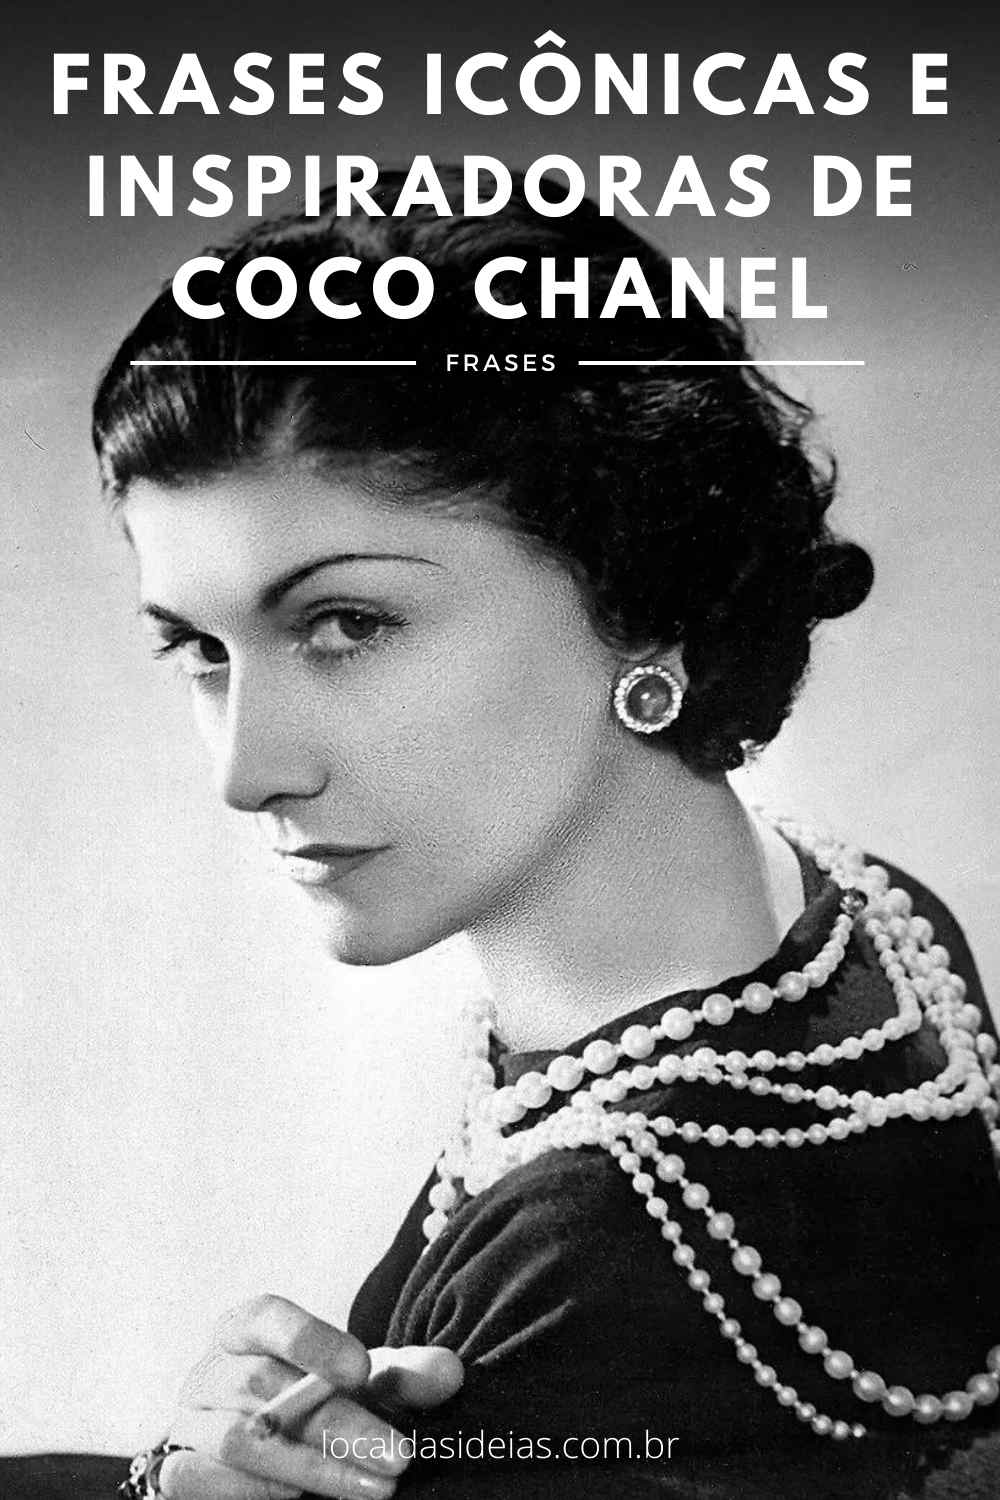 You are currently viewing Frases Icônicas E Inspiradoras De Coco Chanel